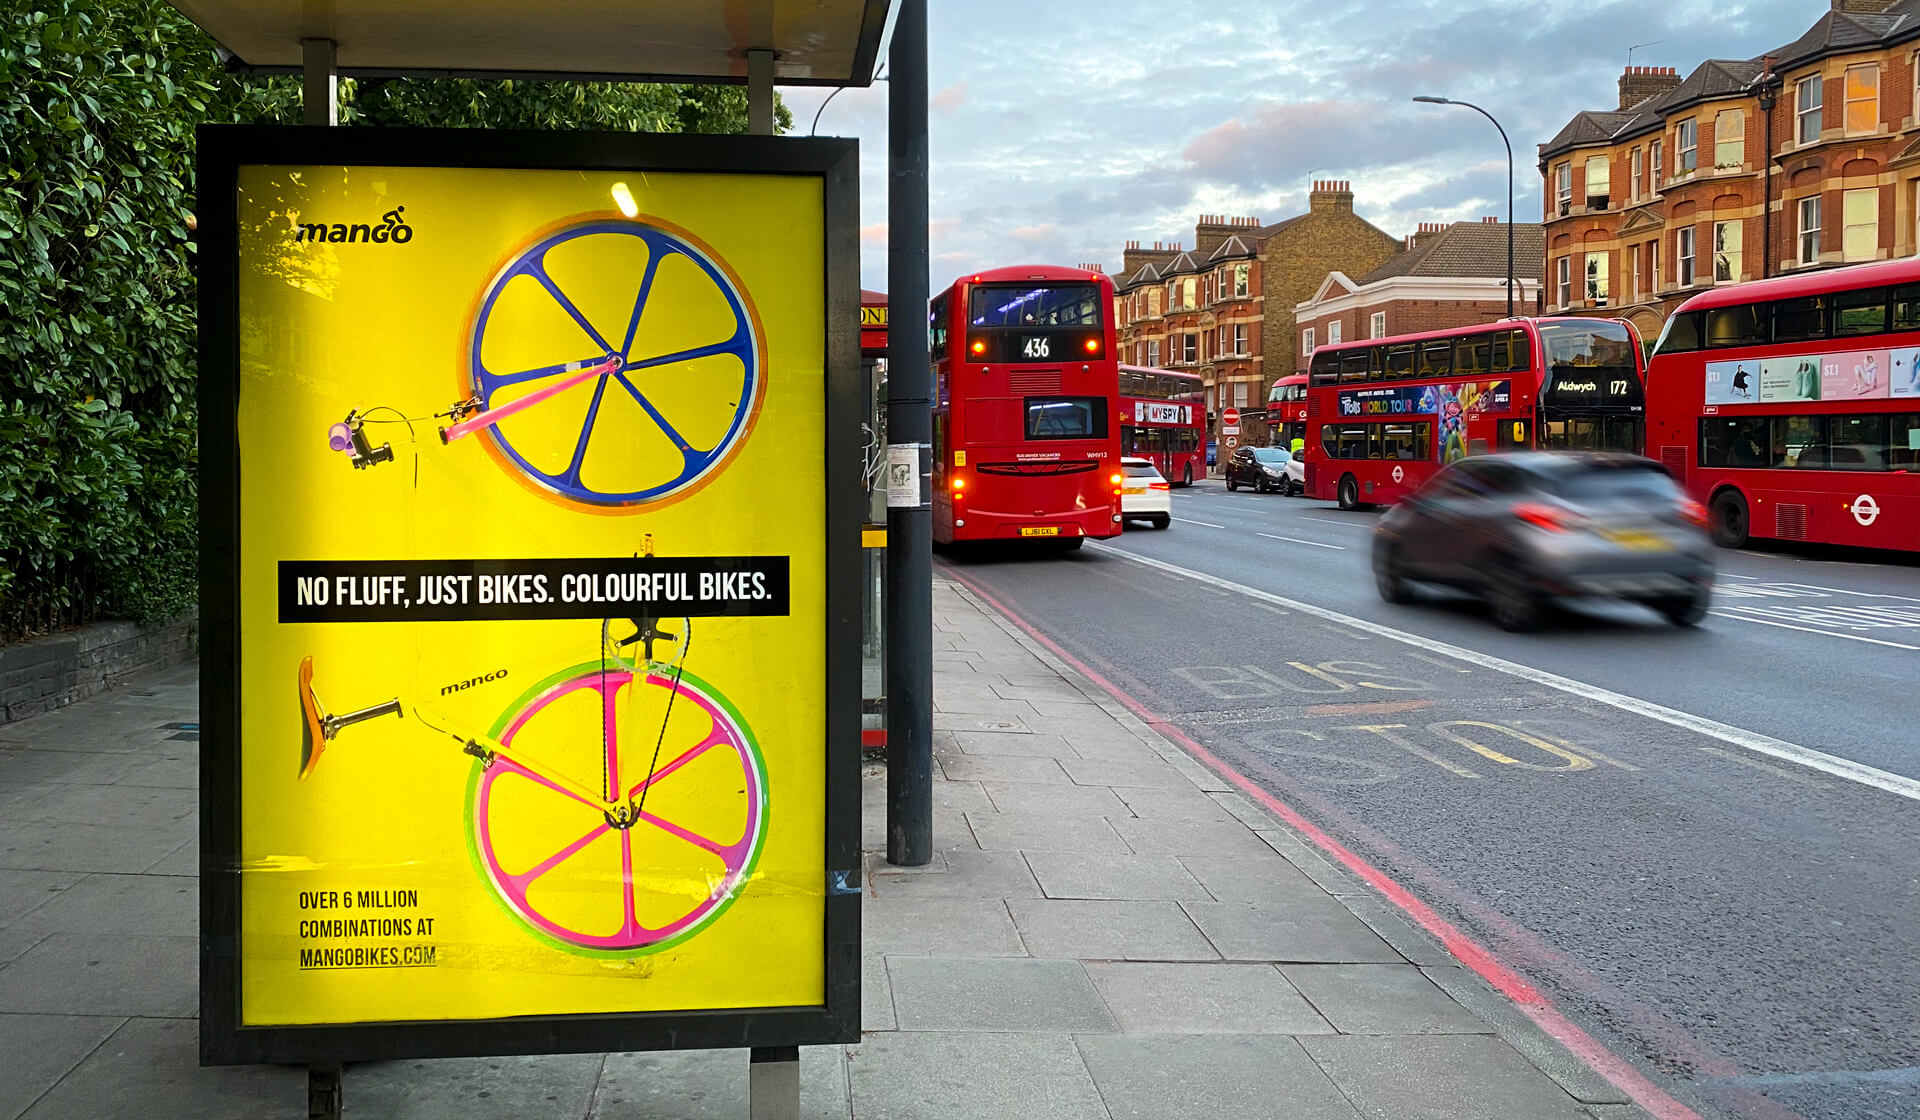 Mango - No Fluff - Mellor&Smith Advertising campaign at bus stop